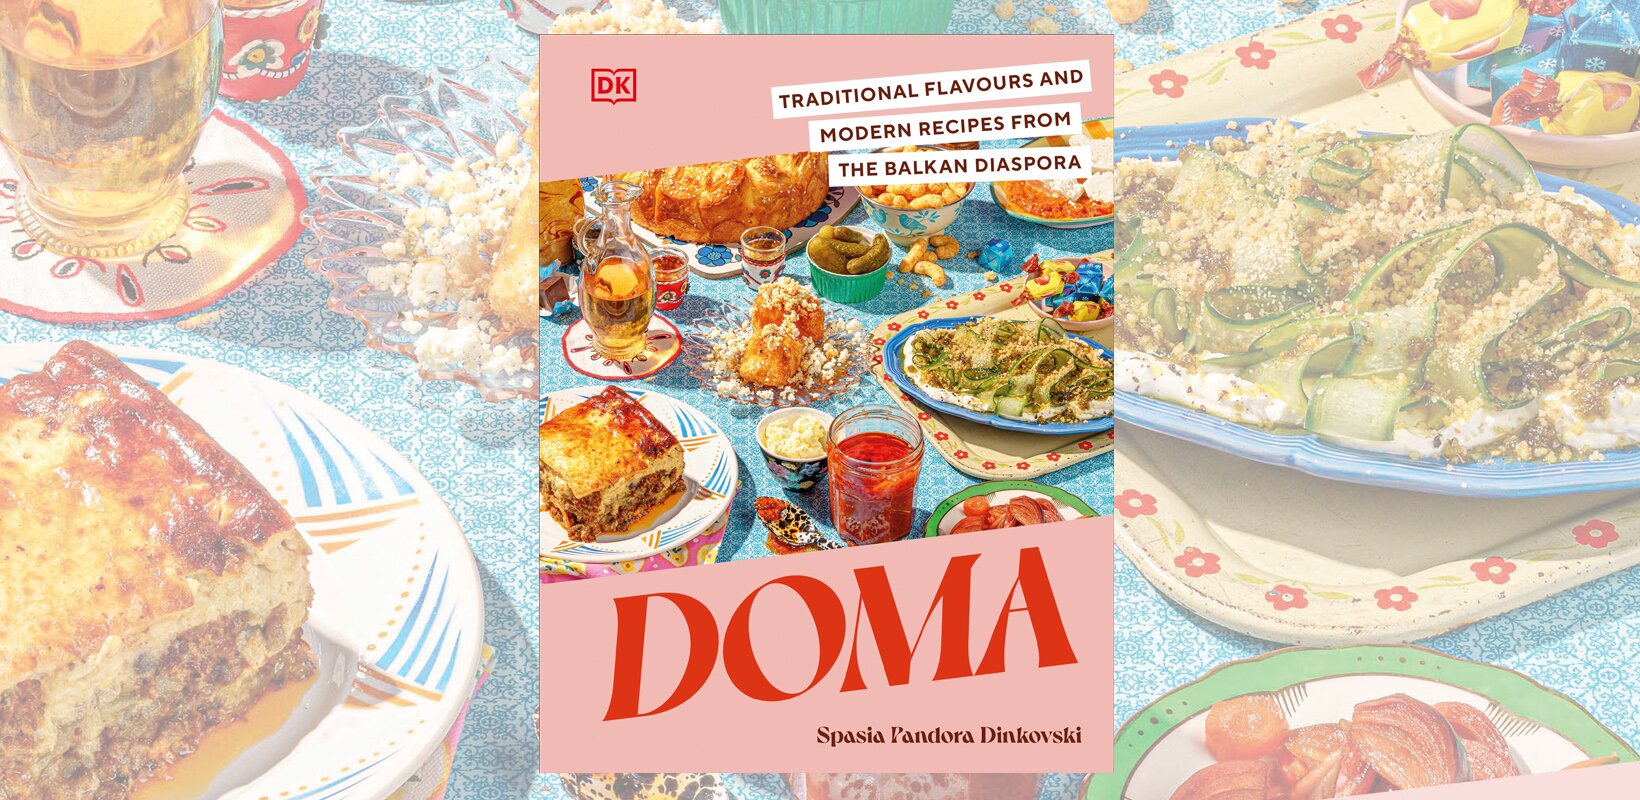 Book review: Doma by Spasia Pandora Dinkovski